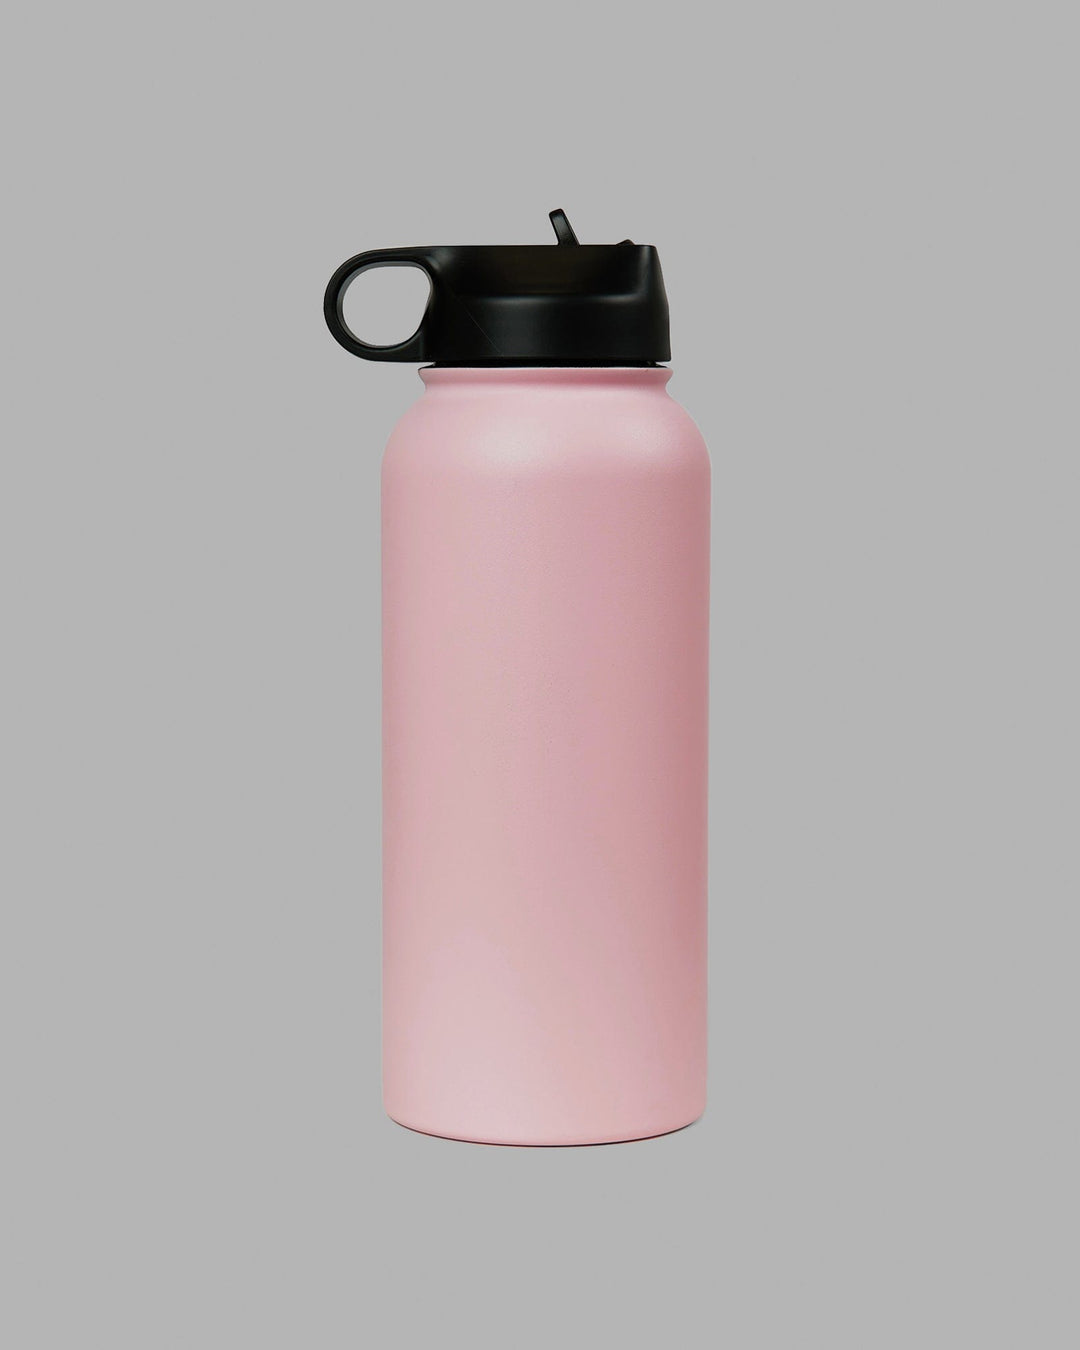 https://www.lskd.co/cdn/shop/files/hydrosphere-32oz-bottle-pink-1.jpg?v=1691714572&width=1080